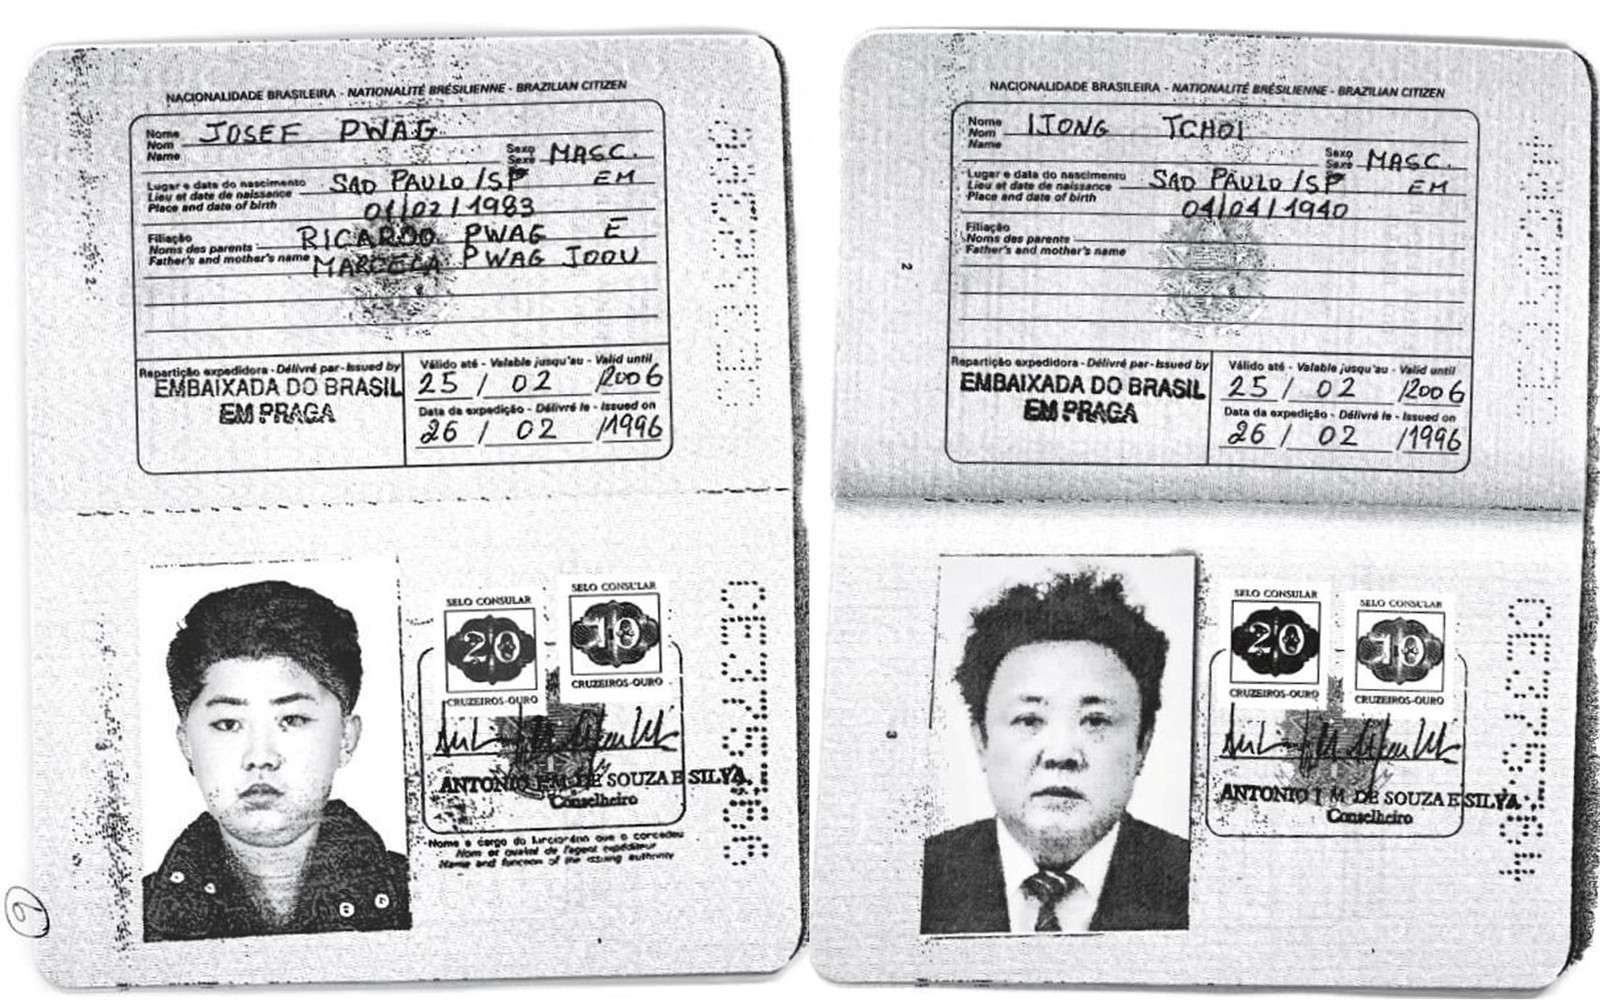 Cópias dos passaportes brasileiros com as fotos de Kim Jong-un e Kim Jong-il (Foto: Handout via Reuters)